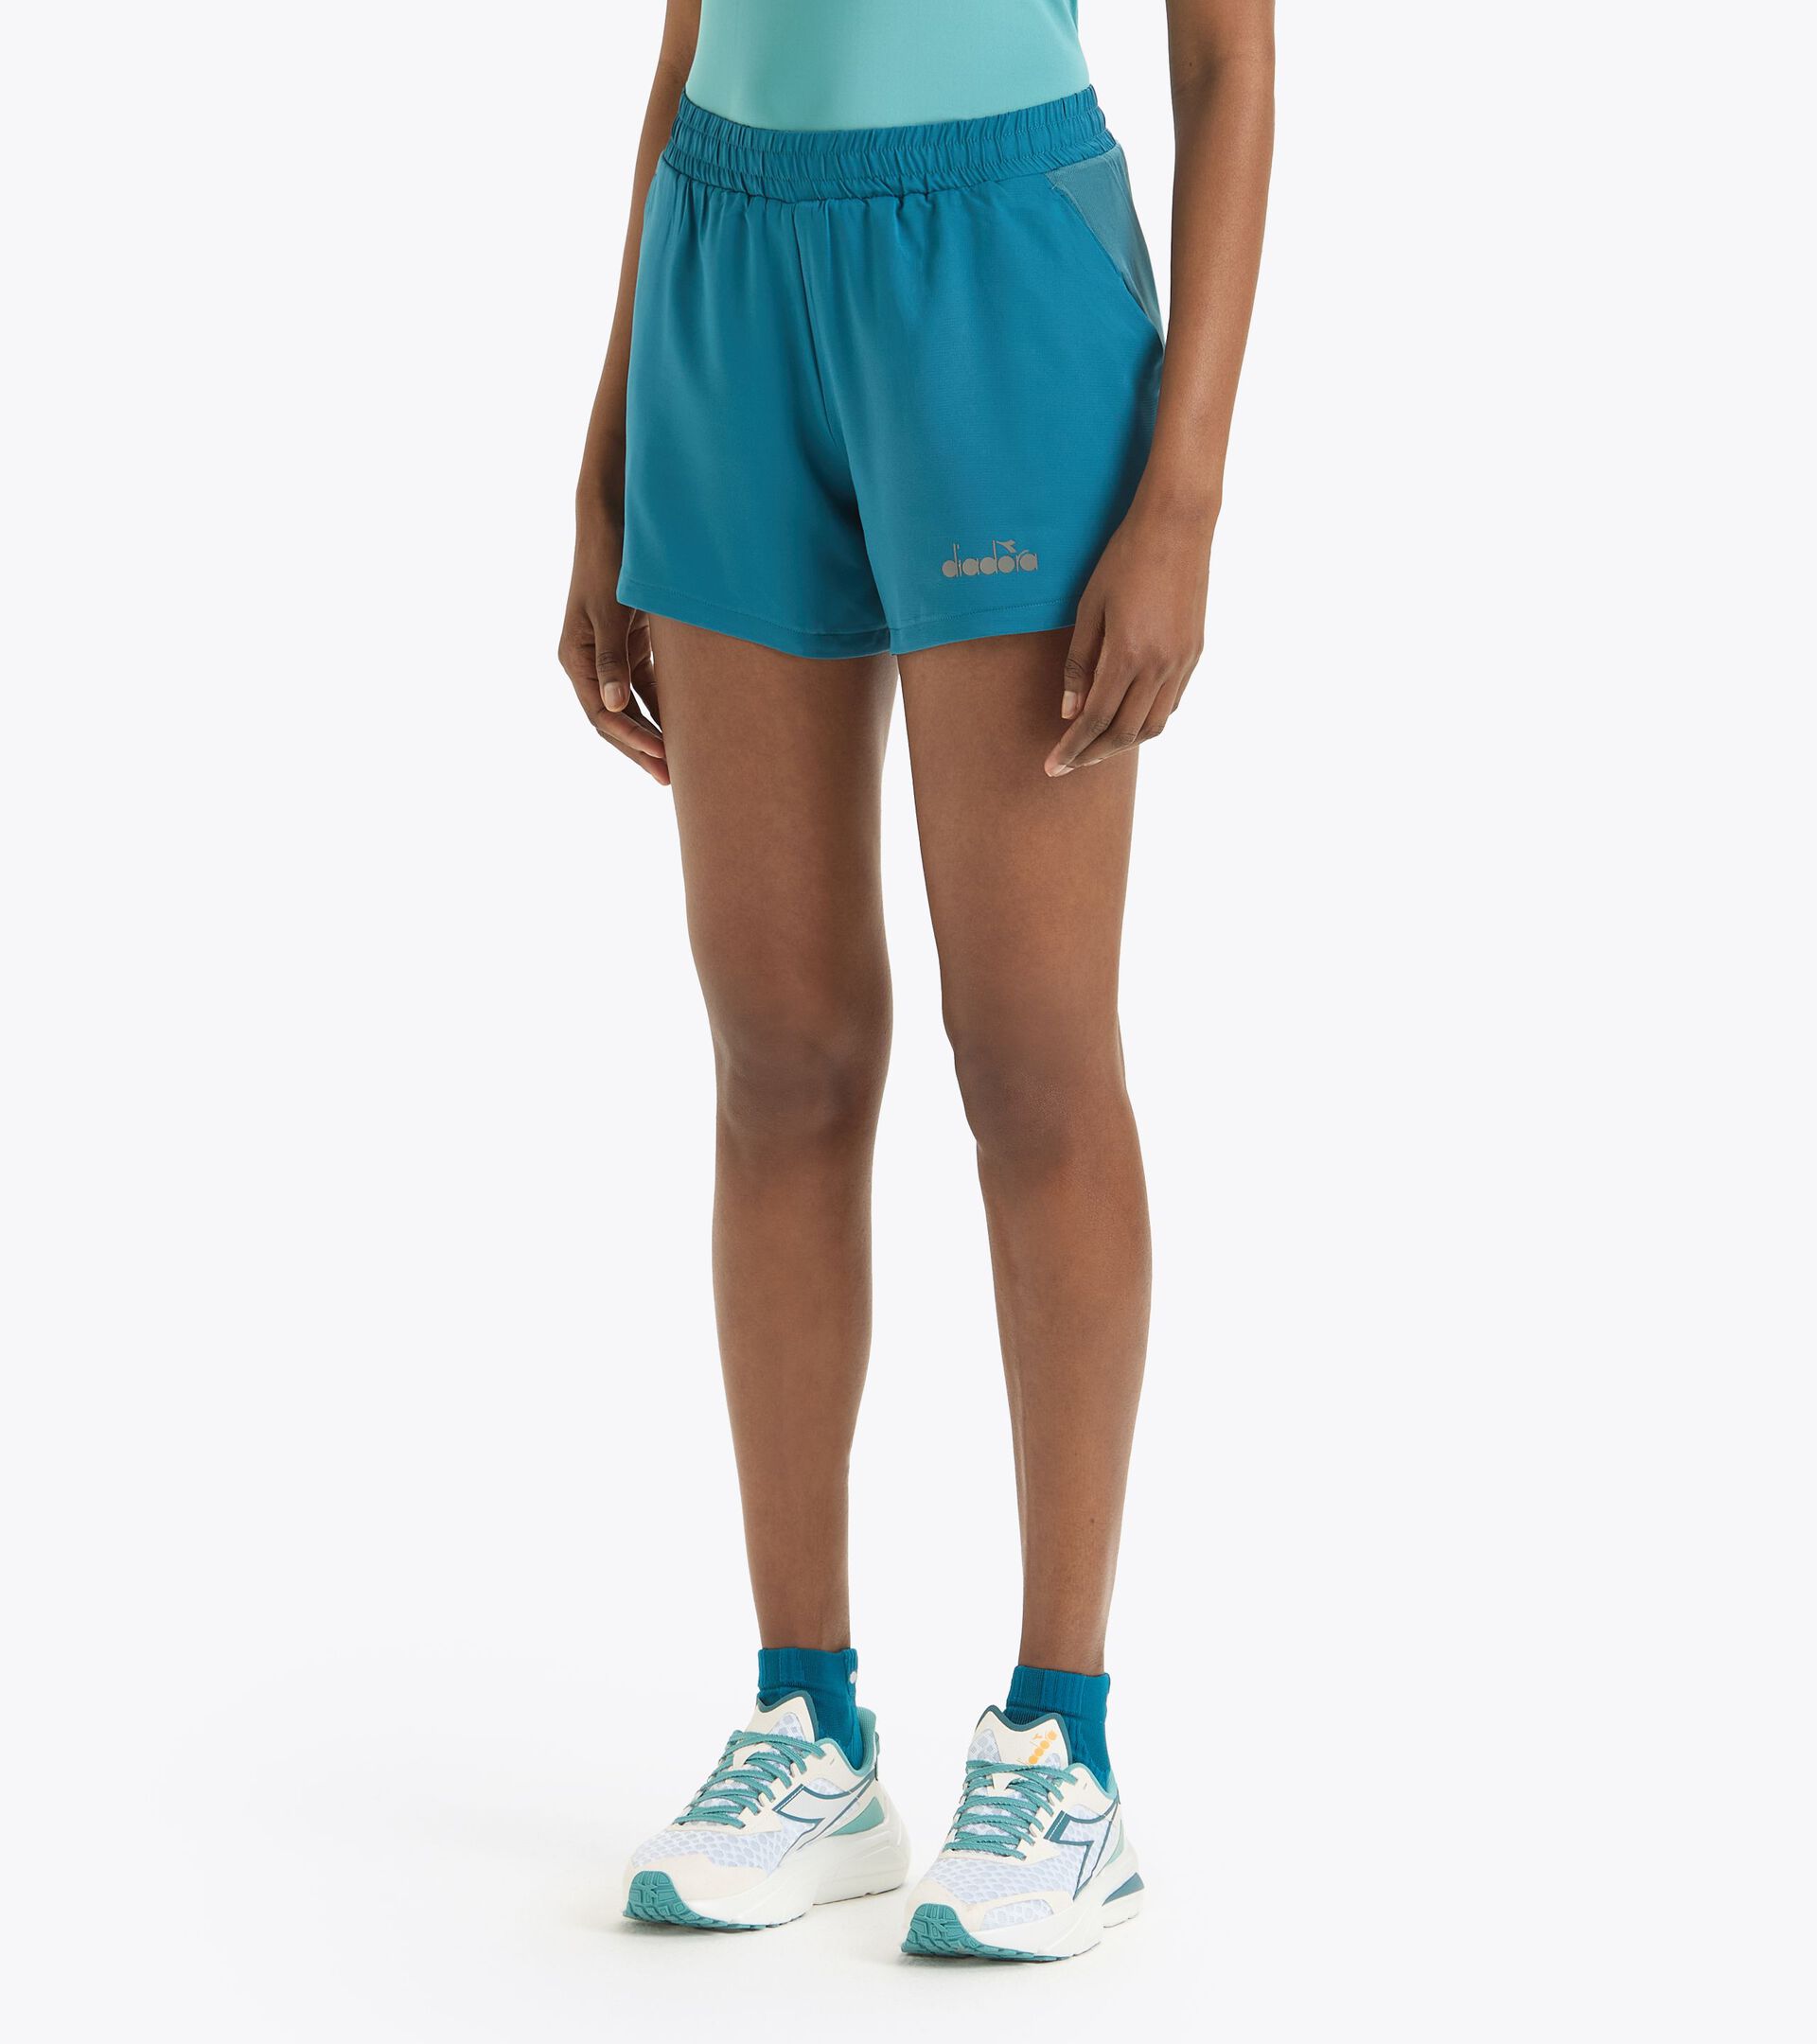 L. POWER SKIRT Polyester tennis skirt - Women - Diadora Online